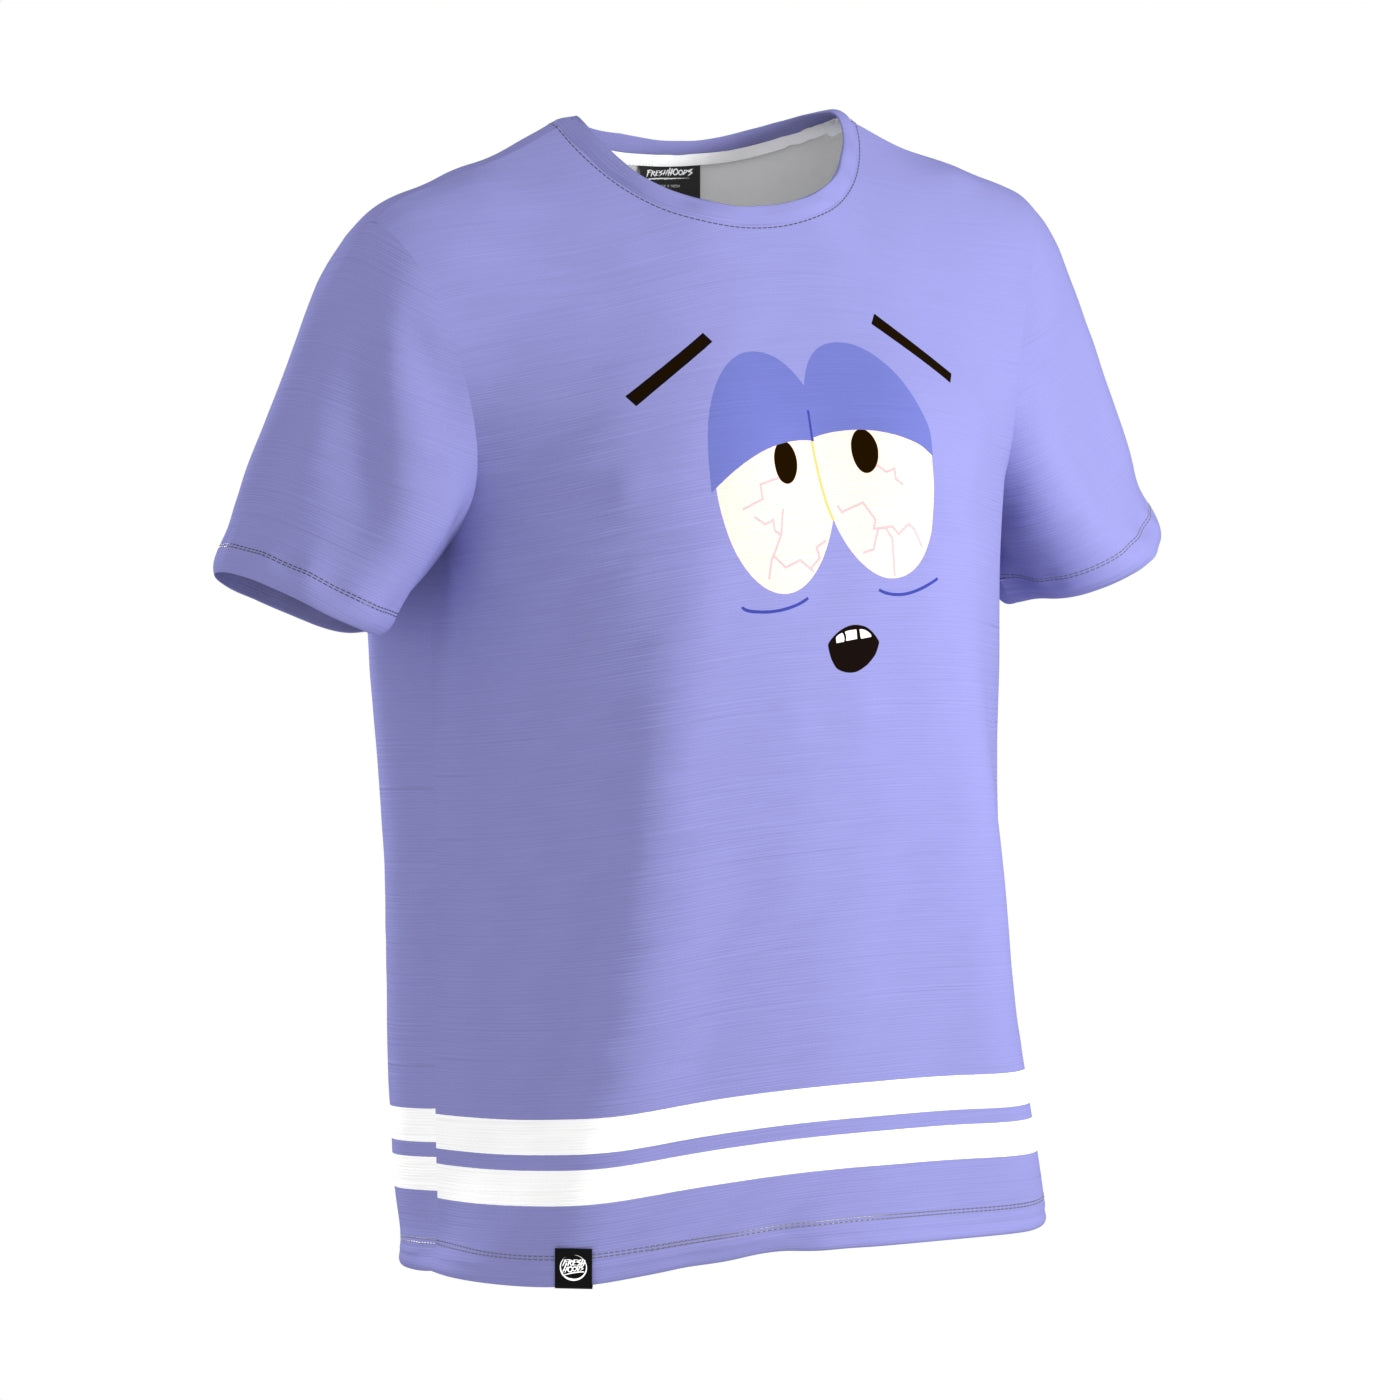 Towelie's Hazy Blue Tribute T-Shirt